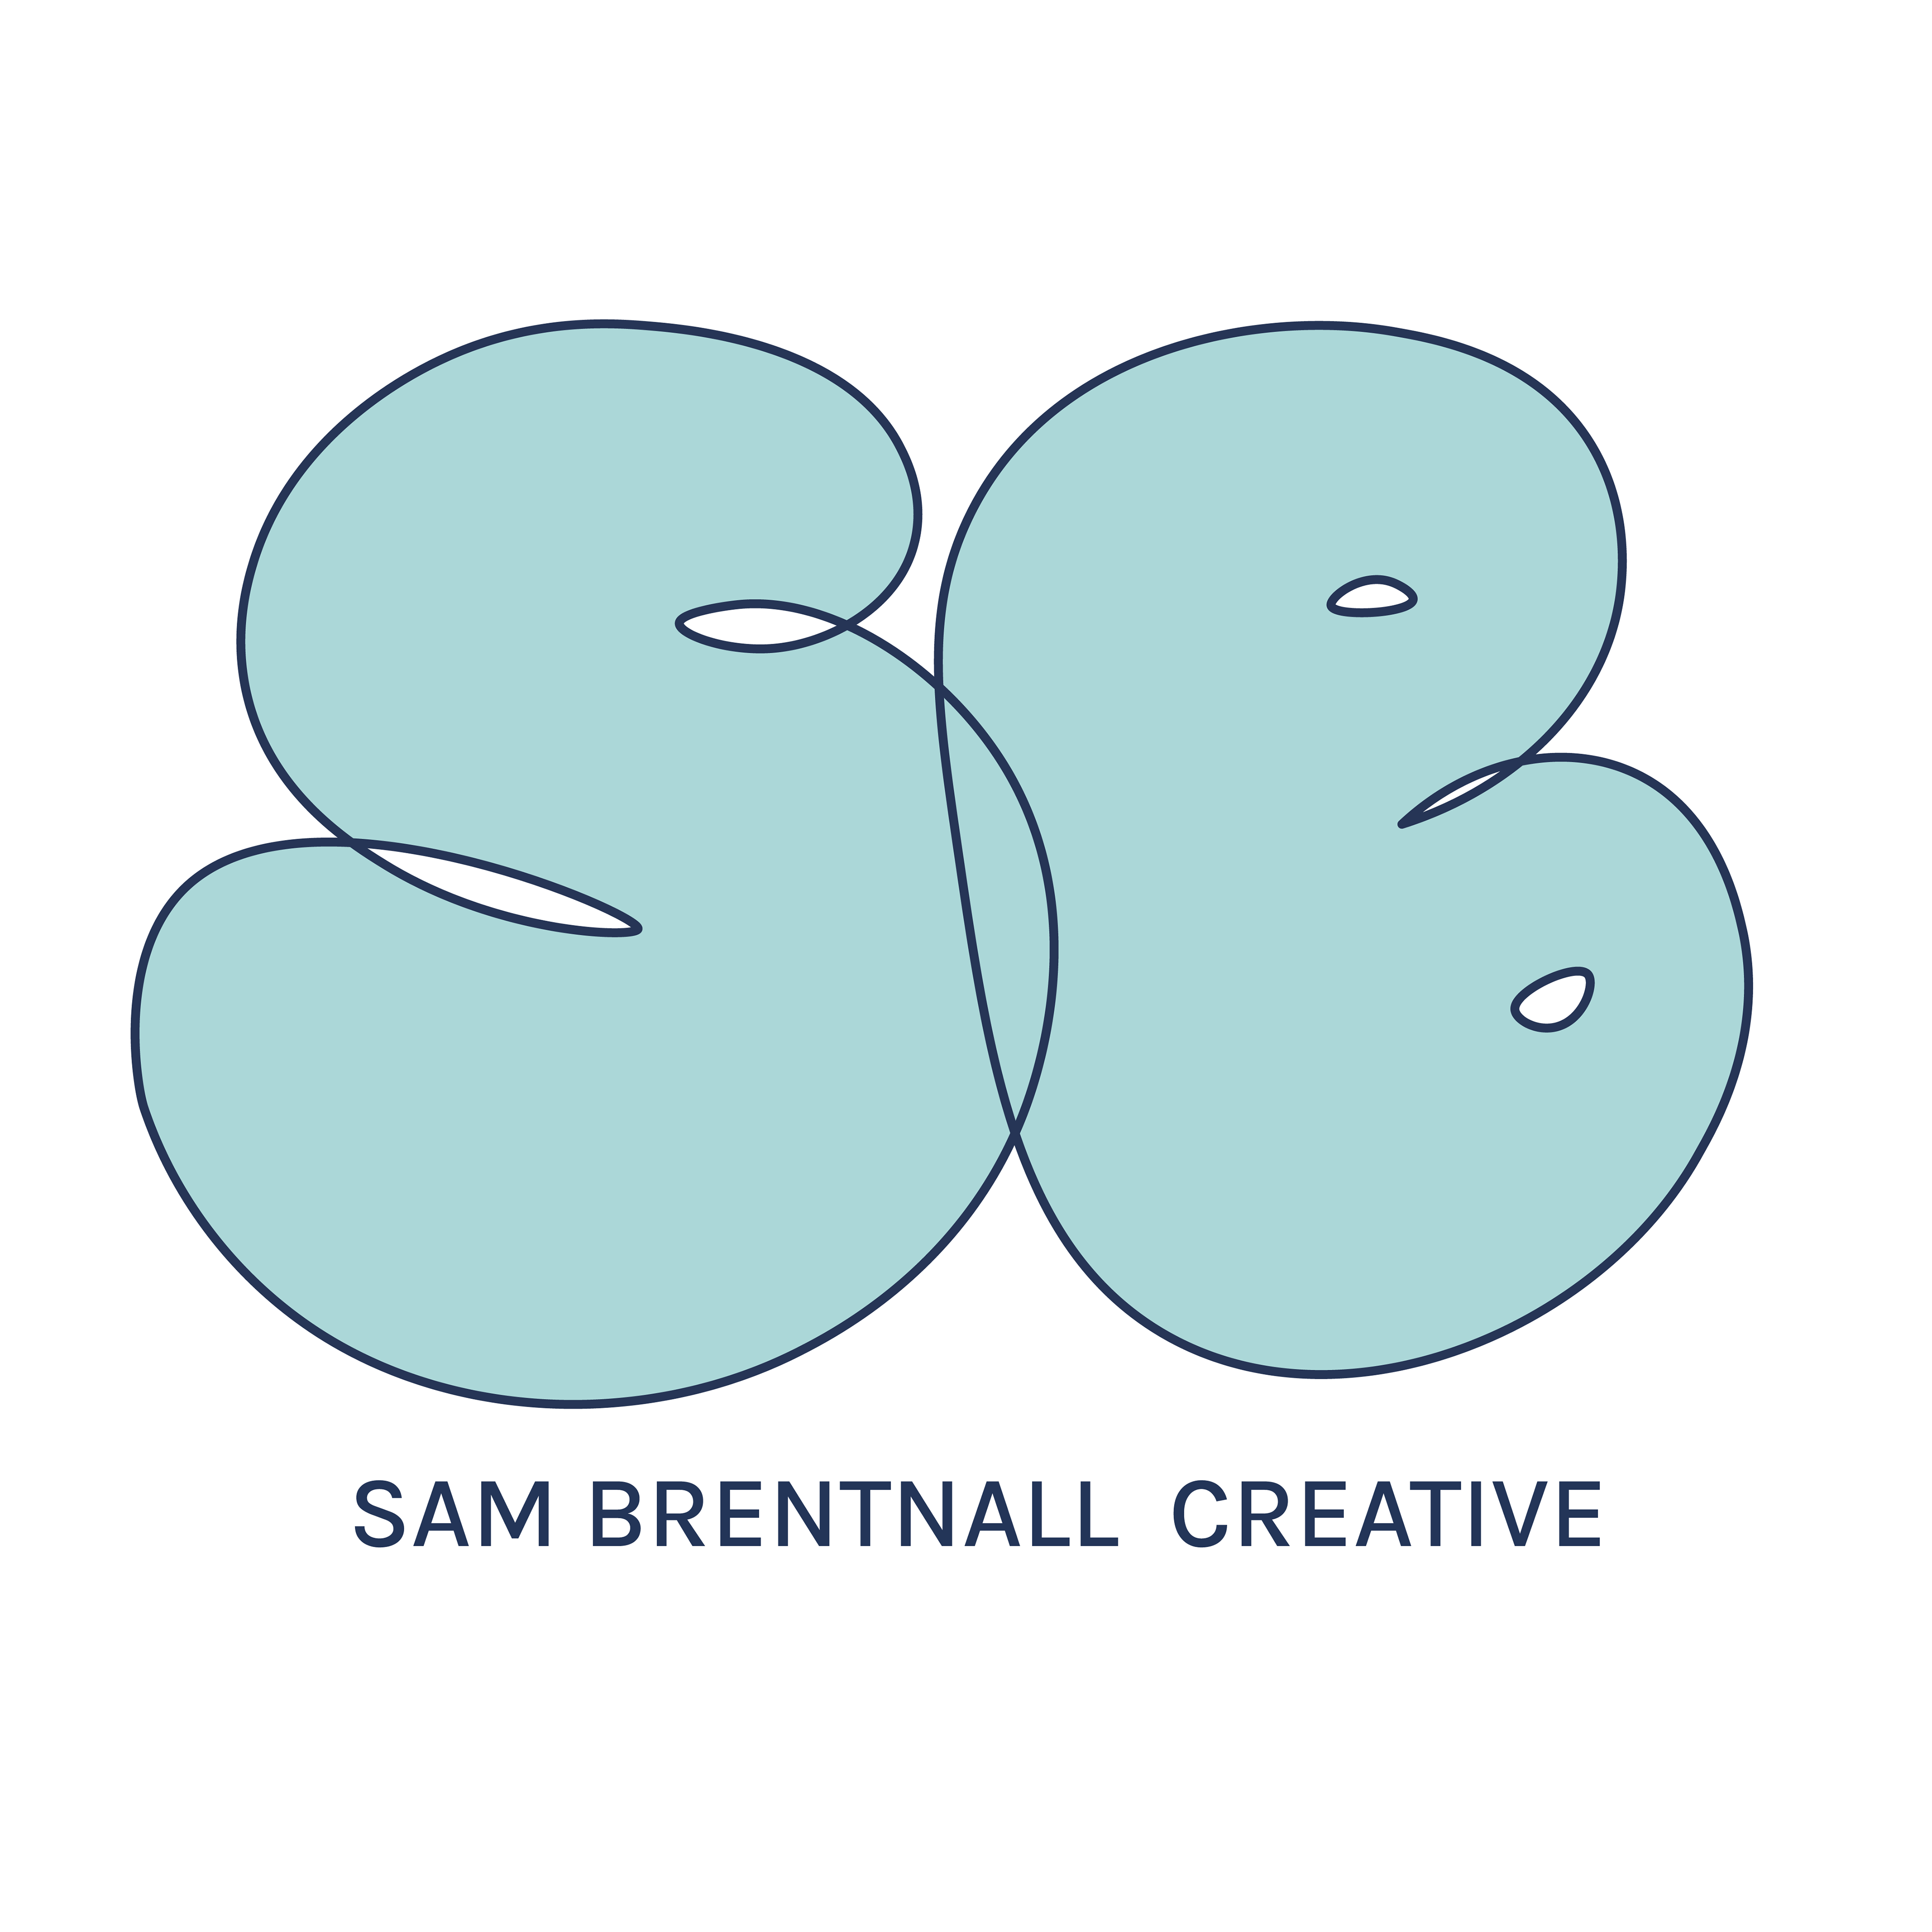 Sam Brentnall